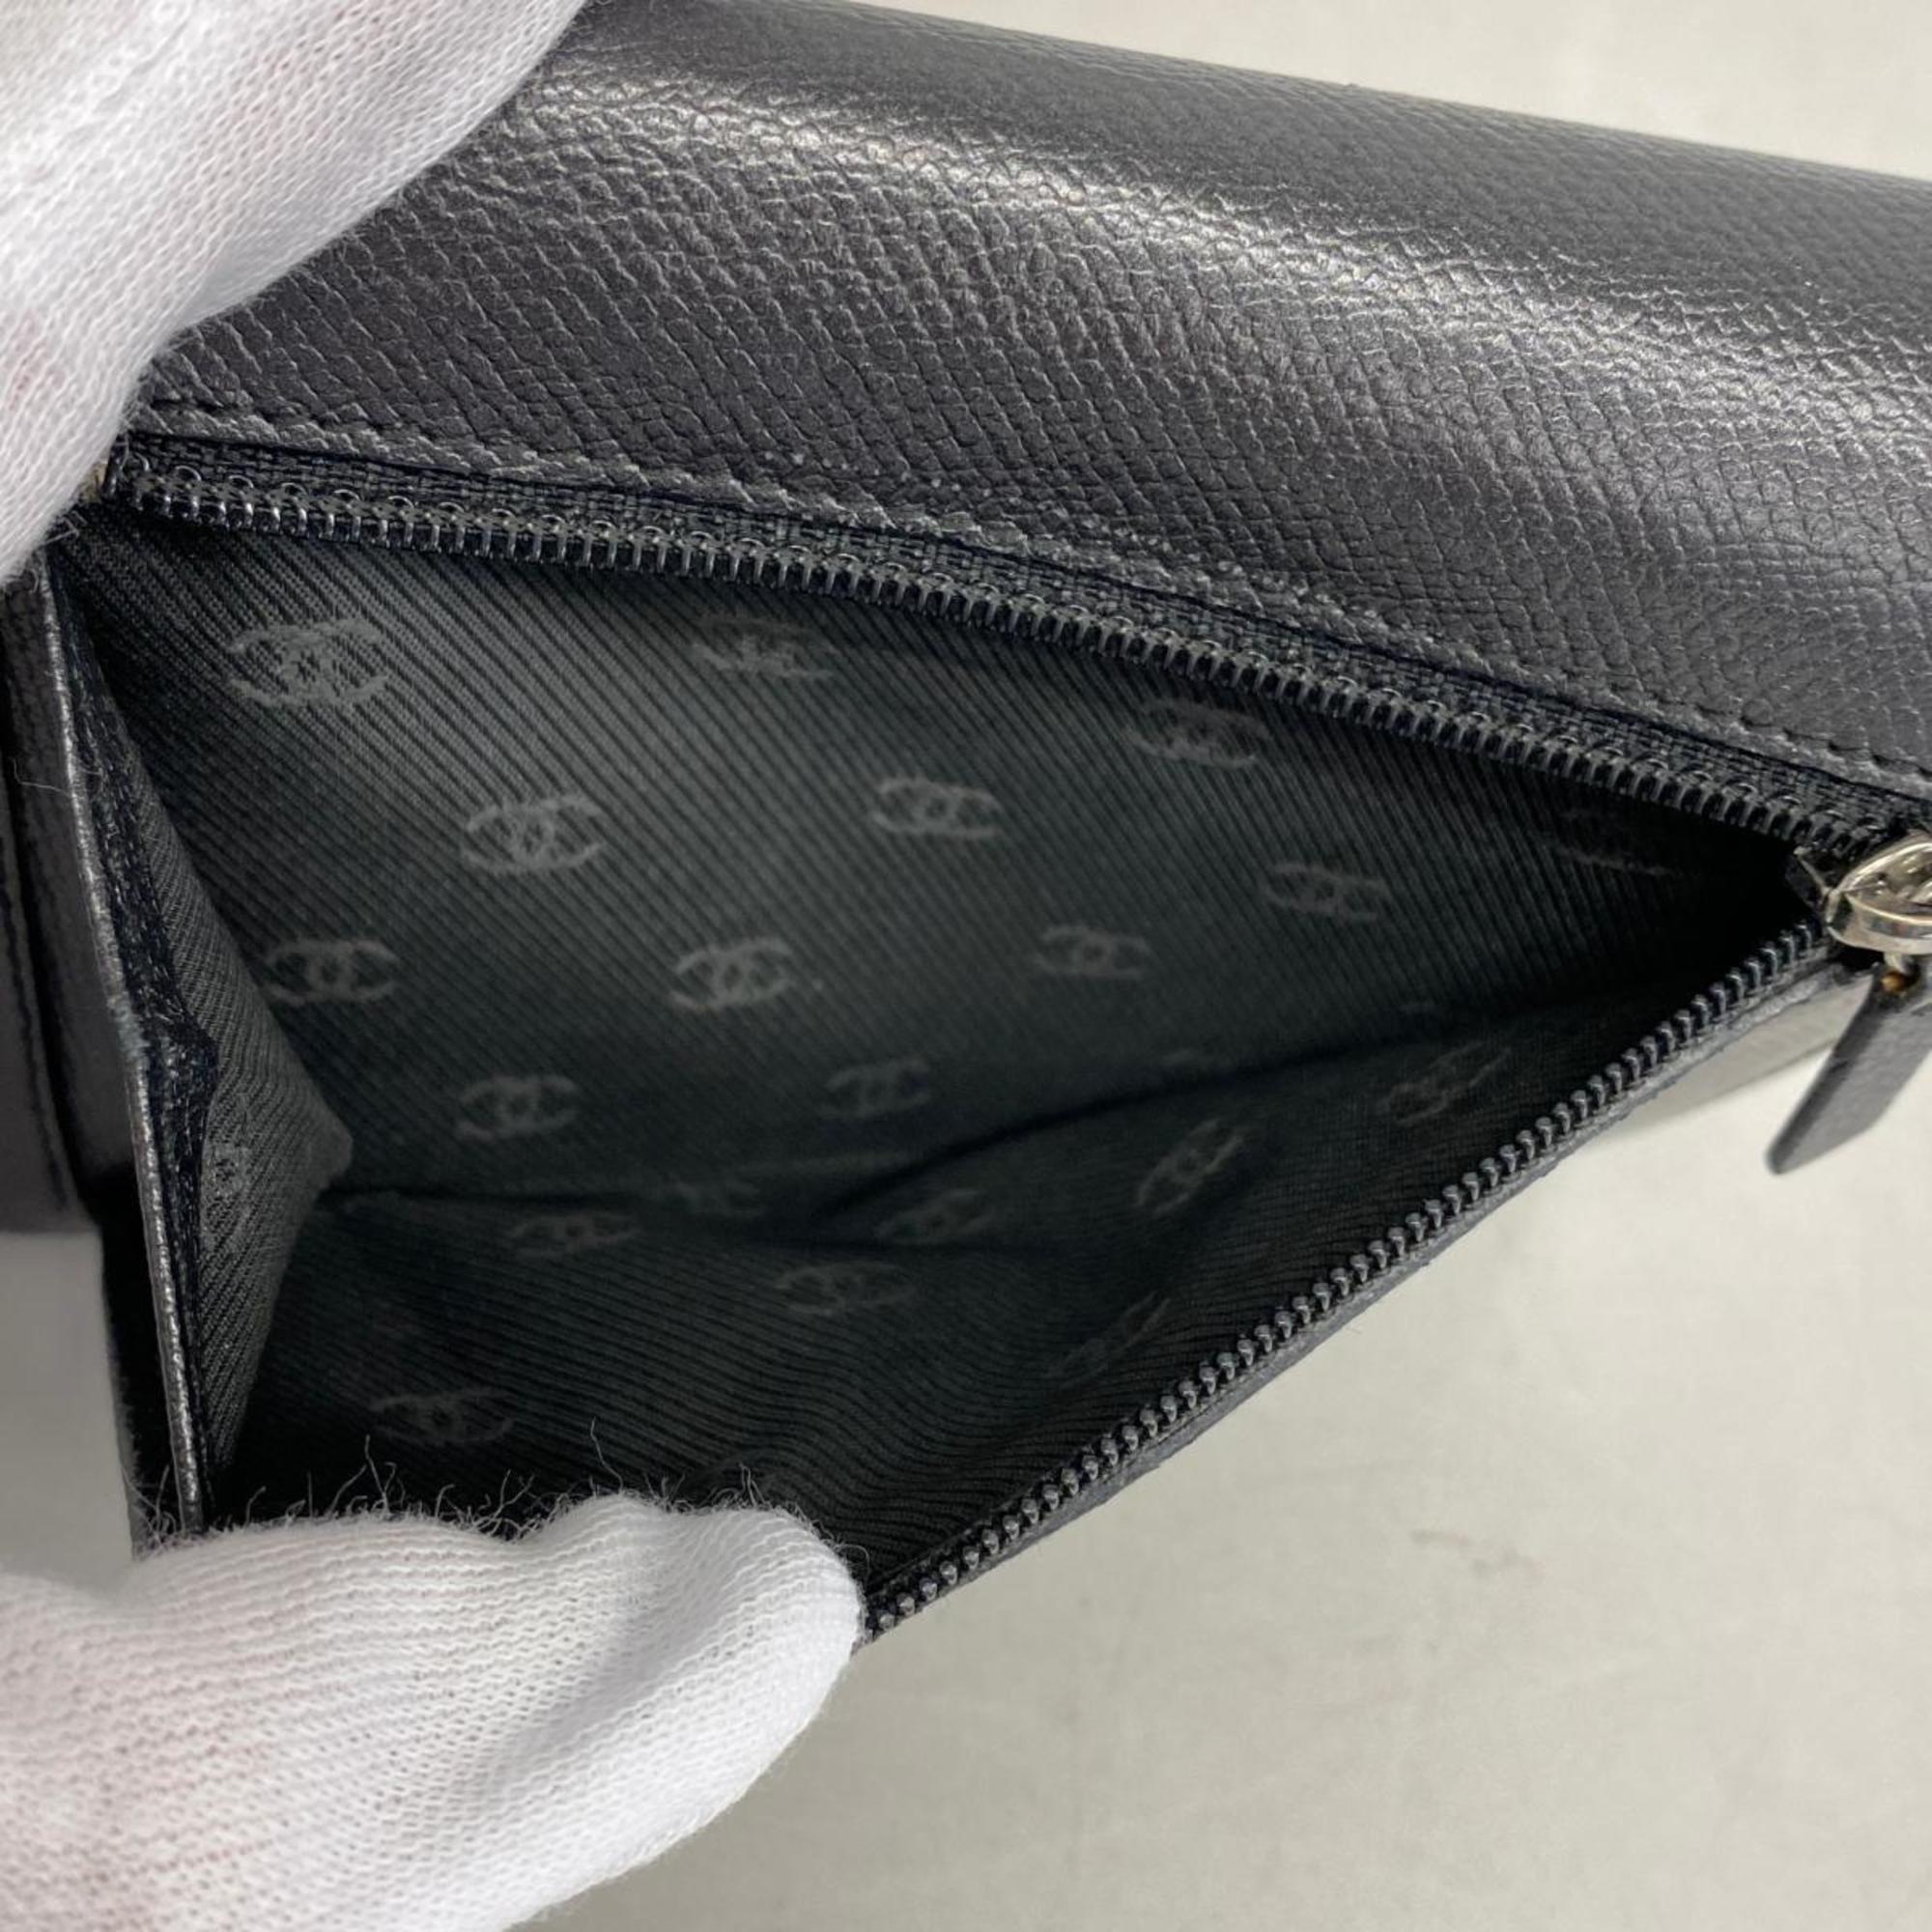 シャネル(Chanel) シャネル 三つ折り財布 ココボタン レザー ブラック   レディース